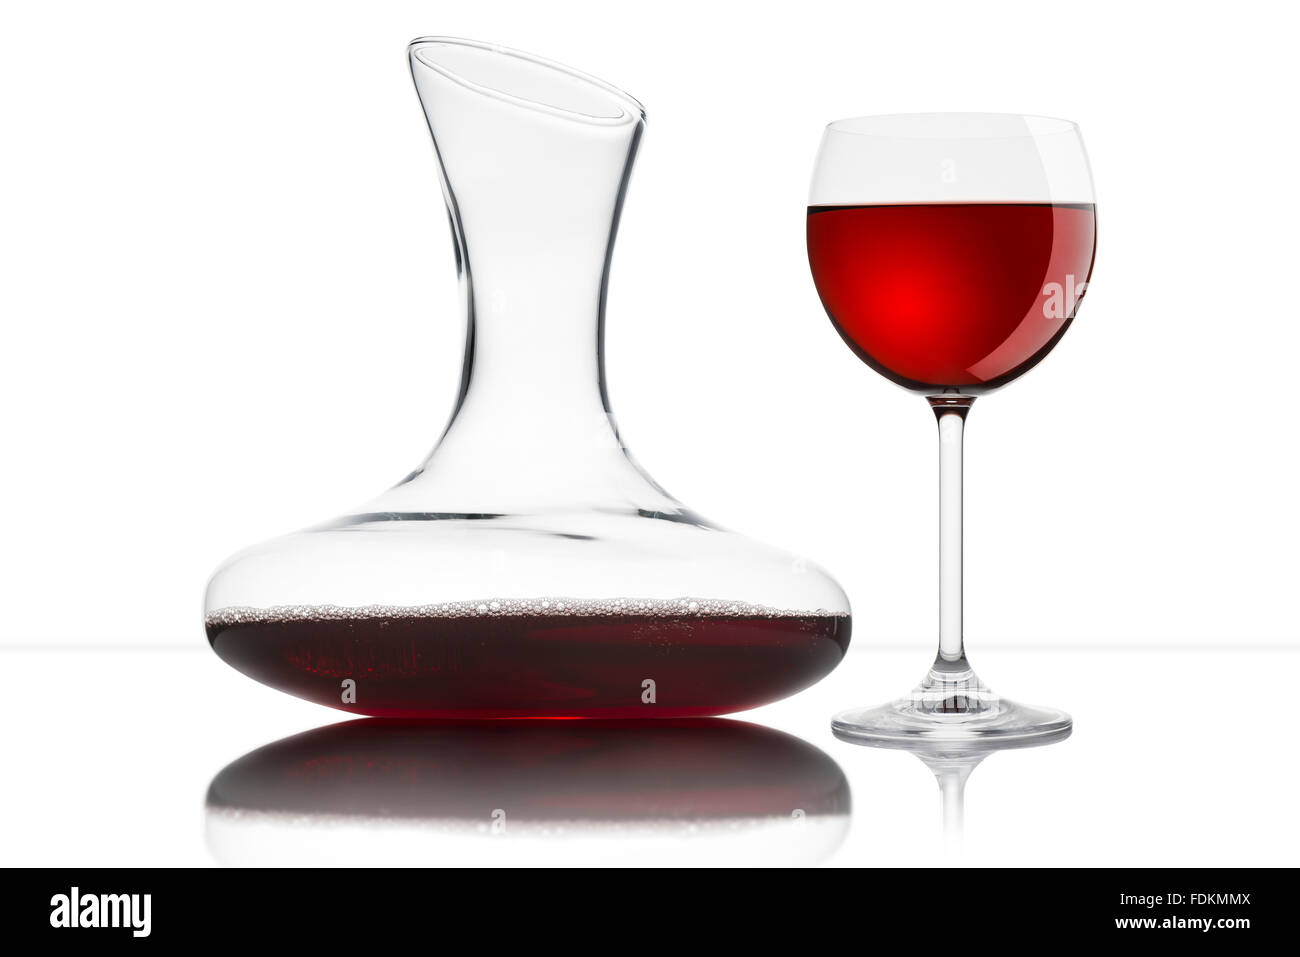 Verre de vin rouge avec carafe, sur fond blanc Banque D'Images